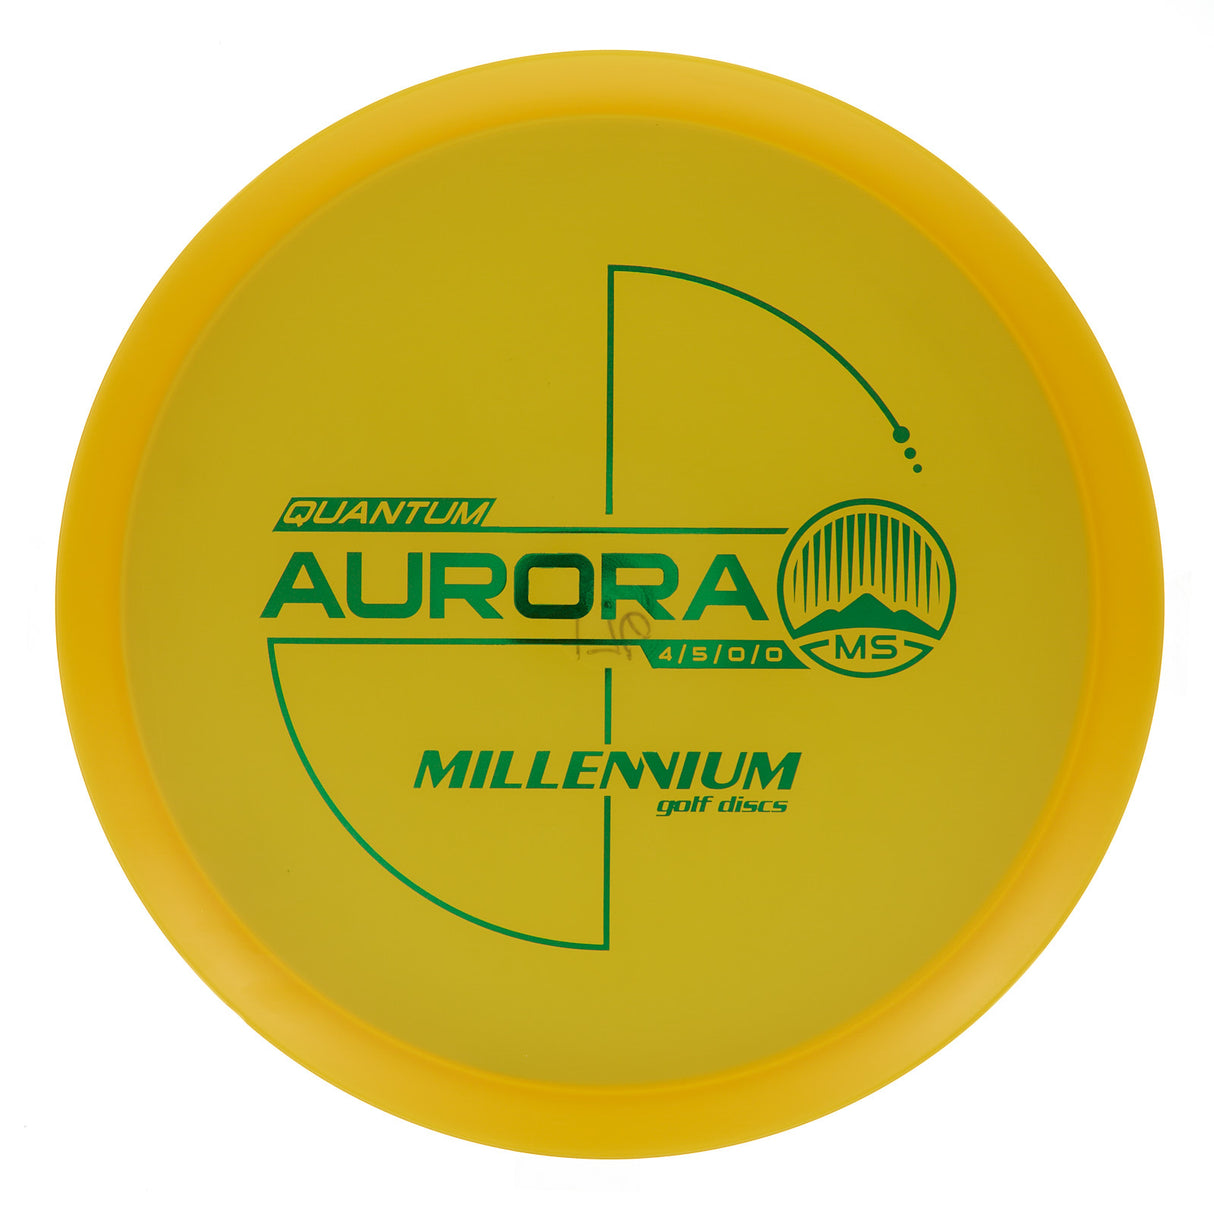 Millennium Aurora MS - Quantum 177g | Style 0001